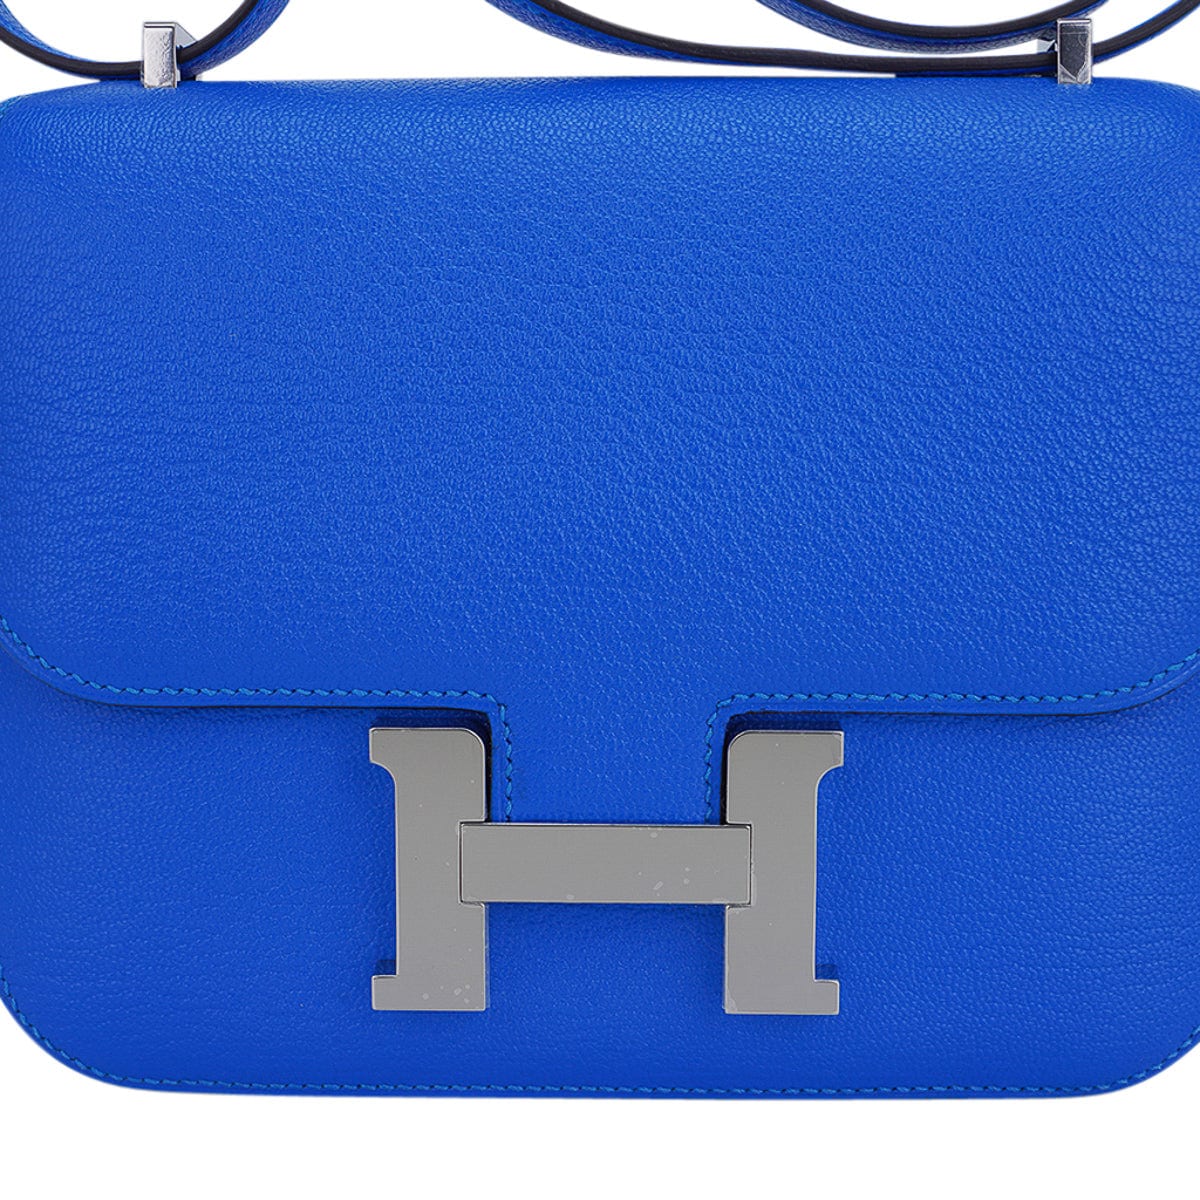 Hermes Verso Constance 18 Bag Bleu Hydra & Deep Bleu Chevre